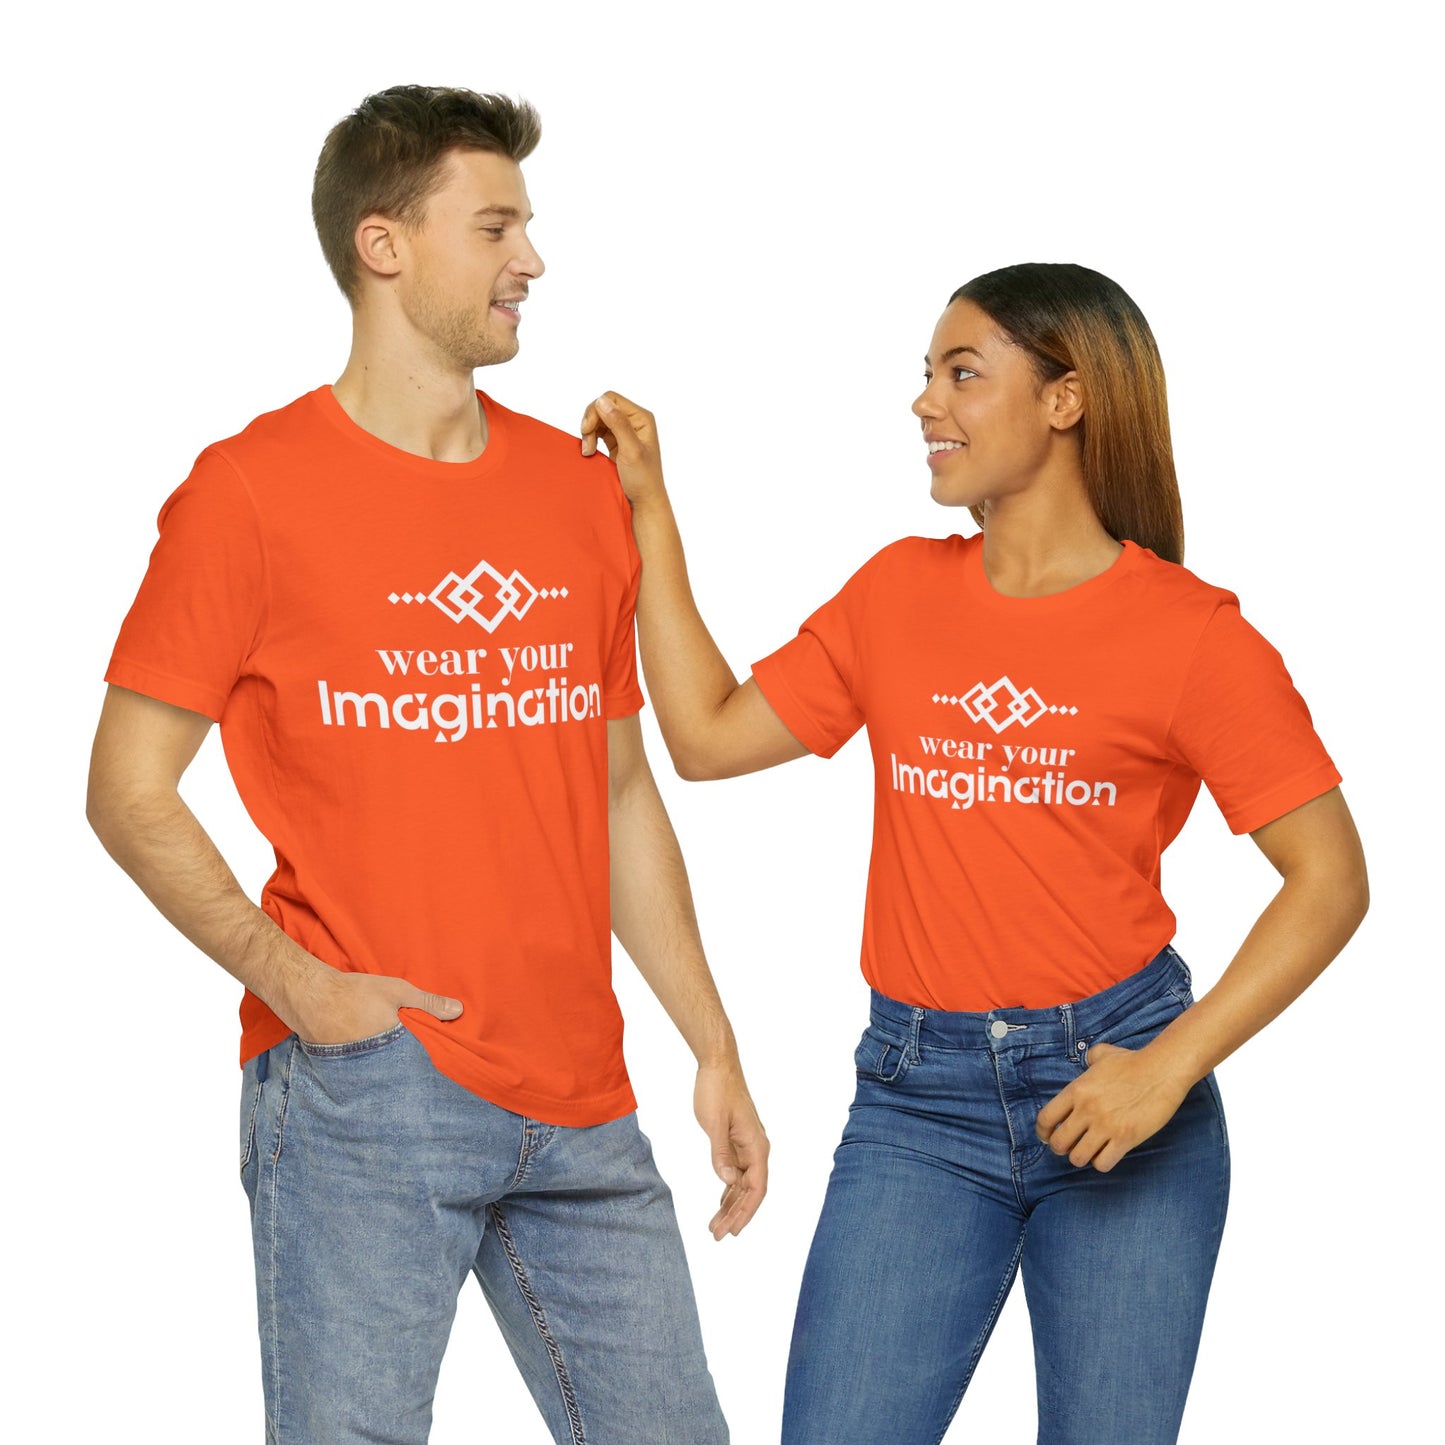 Unisex T-shirt- "Wear Your Imagination"